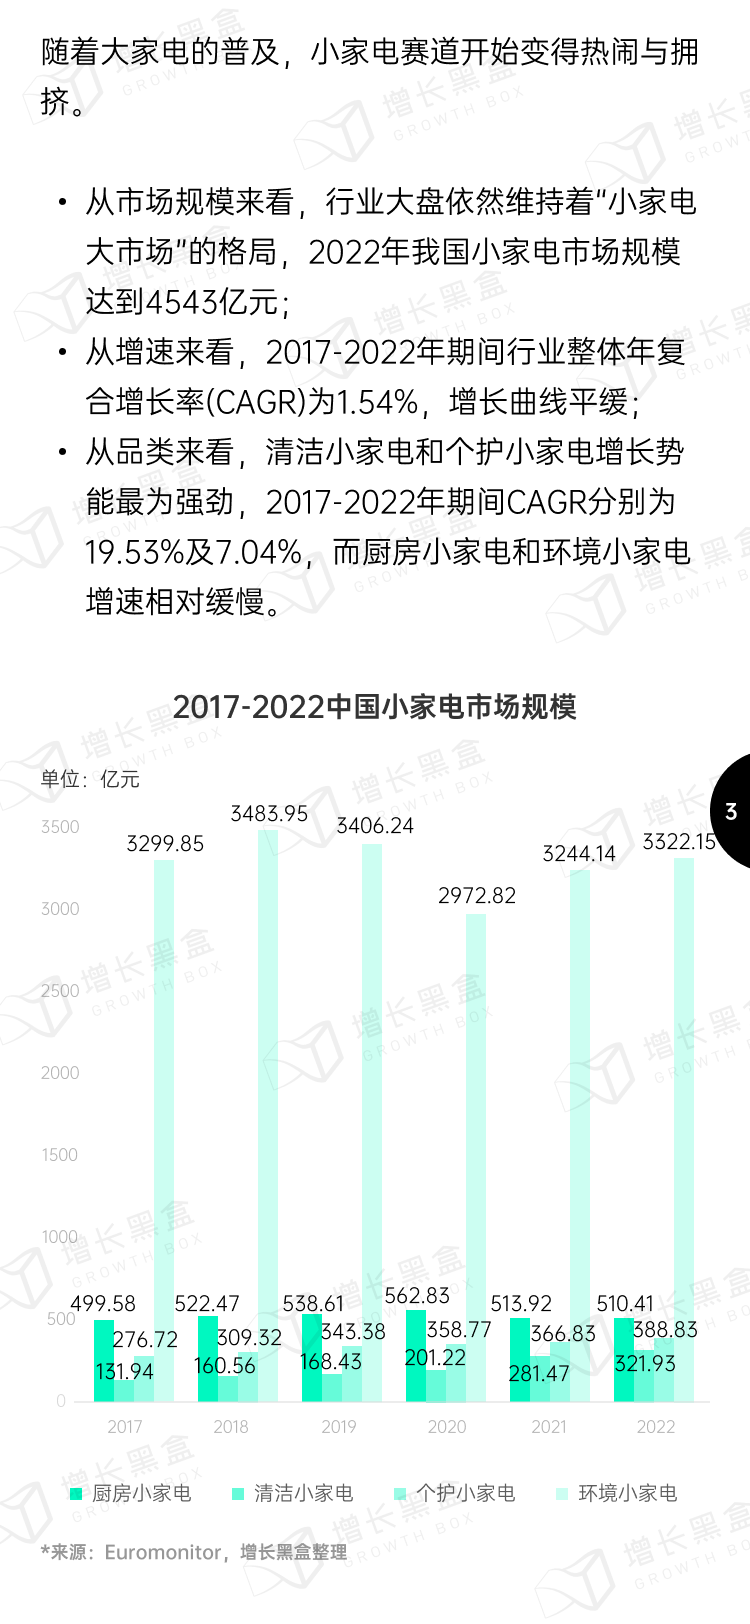 2023小家电新增量洞察丨新锐品牌掘金报告-4.png